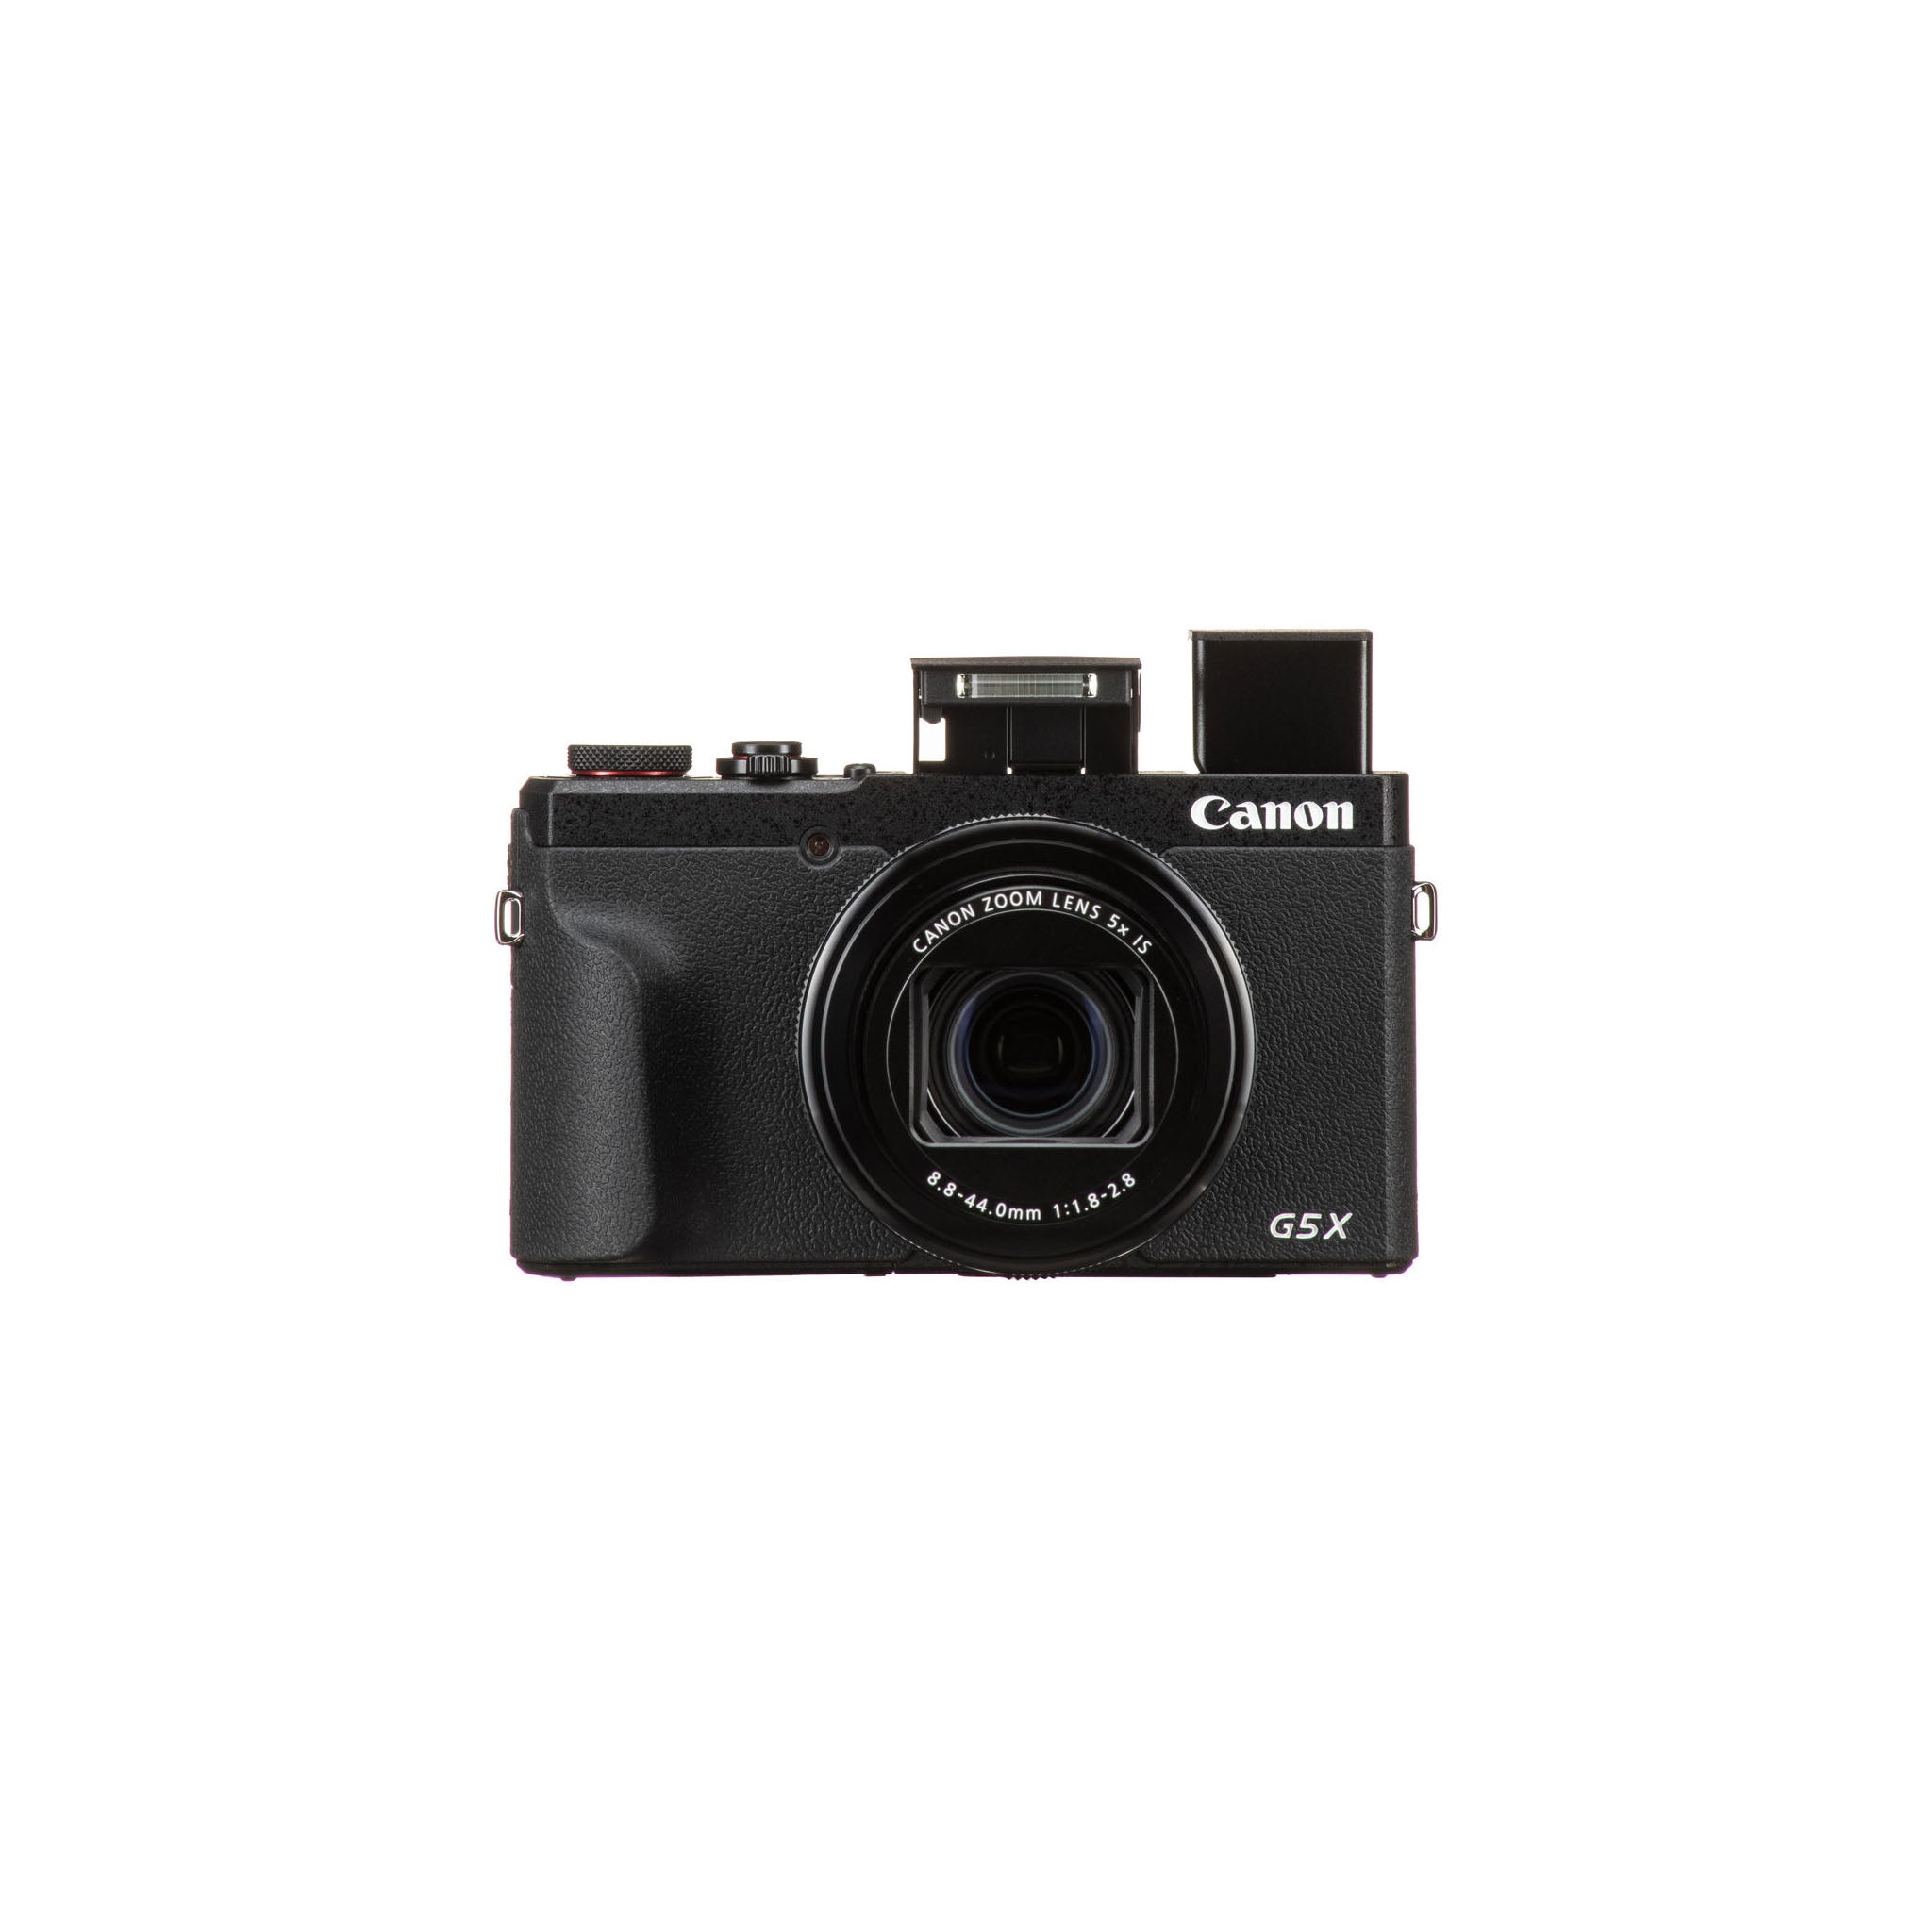 Canon PowerShot G5 X Mk II Camera